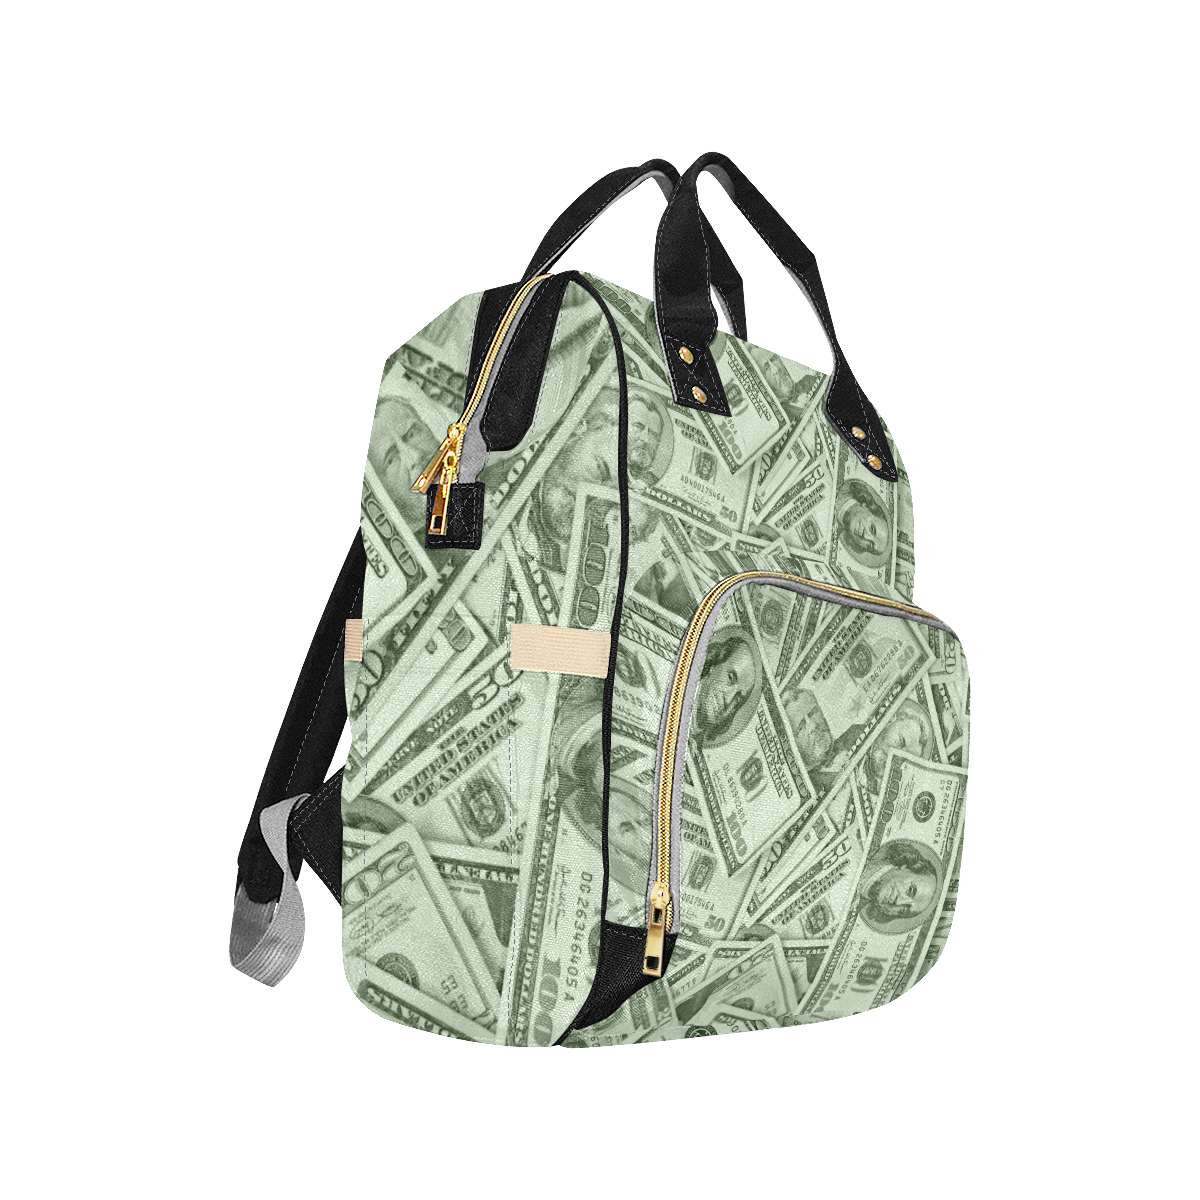 'Loaded' Hundred Dollar Bill Diaper Backpack Multi-Function Diaper Backpack/Diaper Bag (Model 1688)